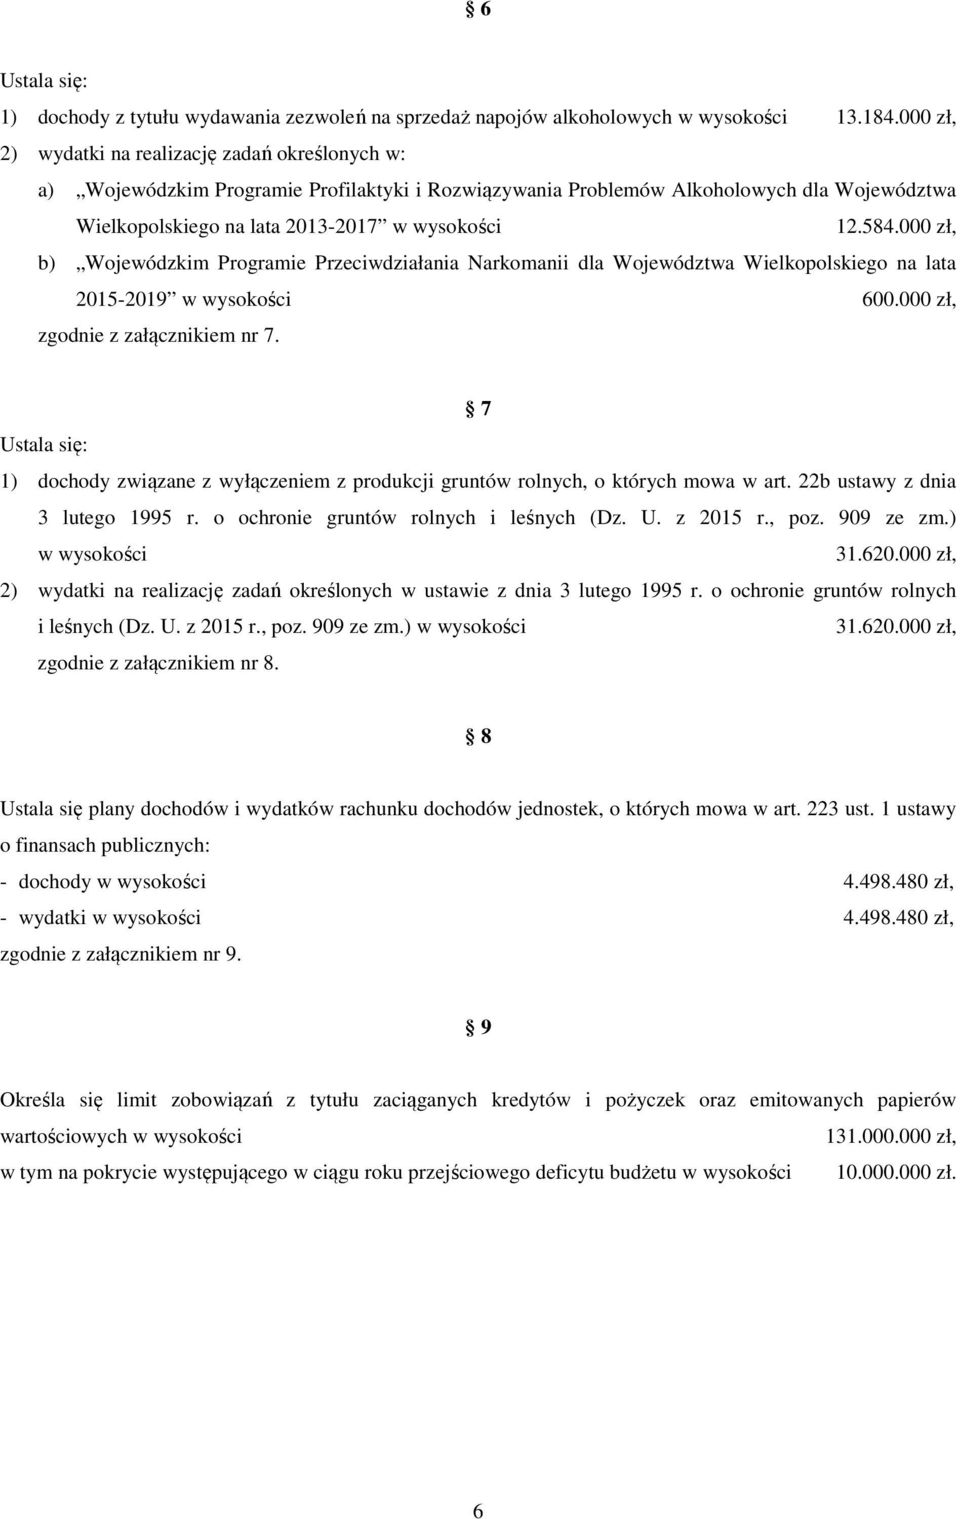 000 zł, b) Wojewódzkim Programie Przeciwdziałania Narkomanii dla Województwa Wielkopolskiego na lata 2015-2019 w wysokości 600.000 zł, zgodnie z załącznikiem nr 7.